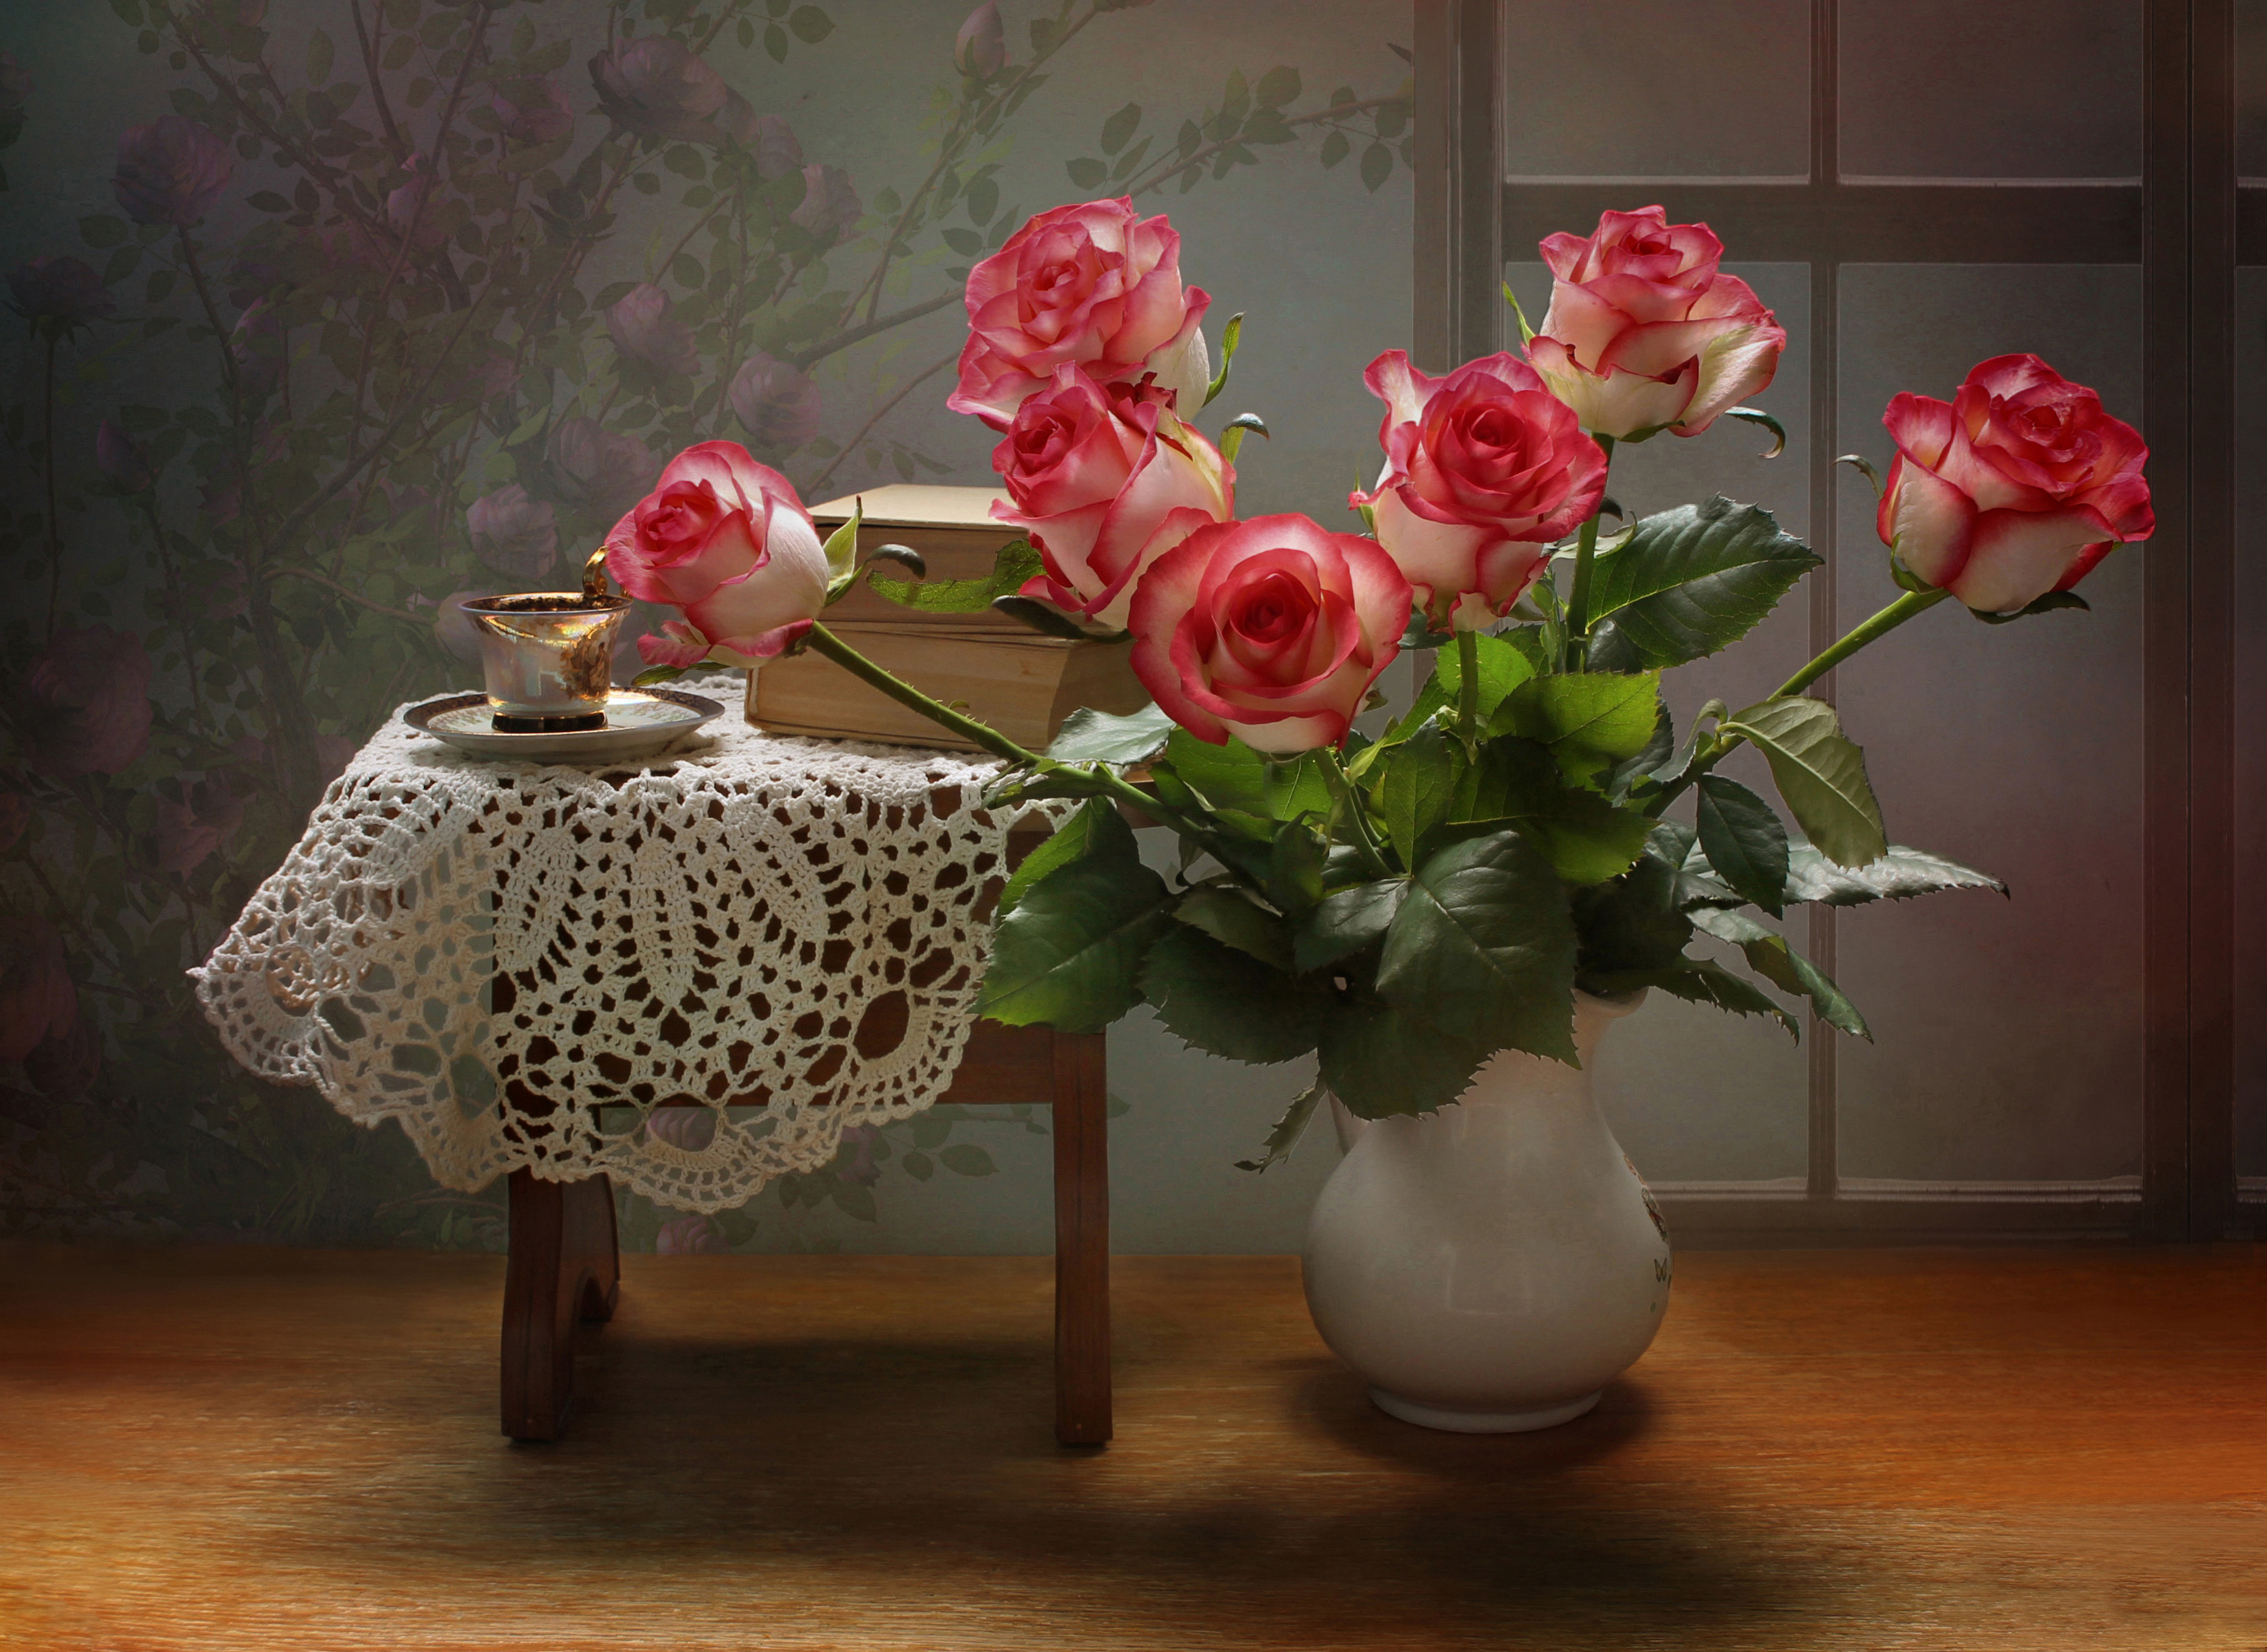 Картинка с цветами на столе. Цветы в вазе. Цветочки в вазе. Шикарные цветы в вазе. Красивый букет цветов в вазе.